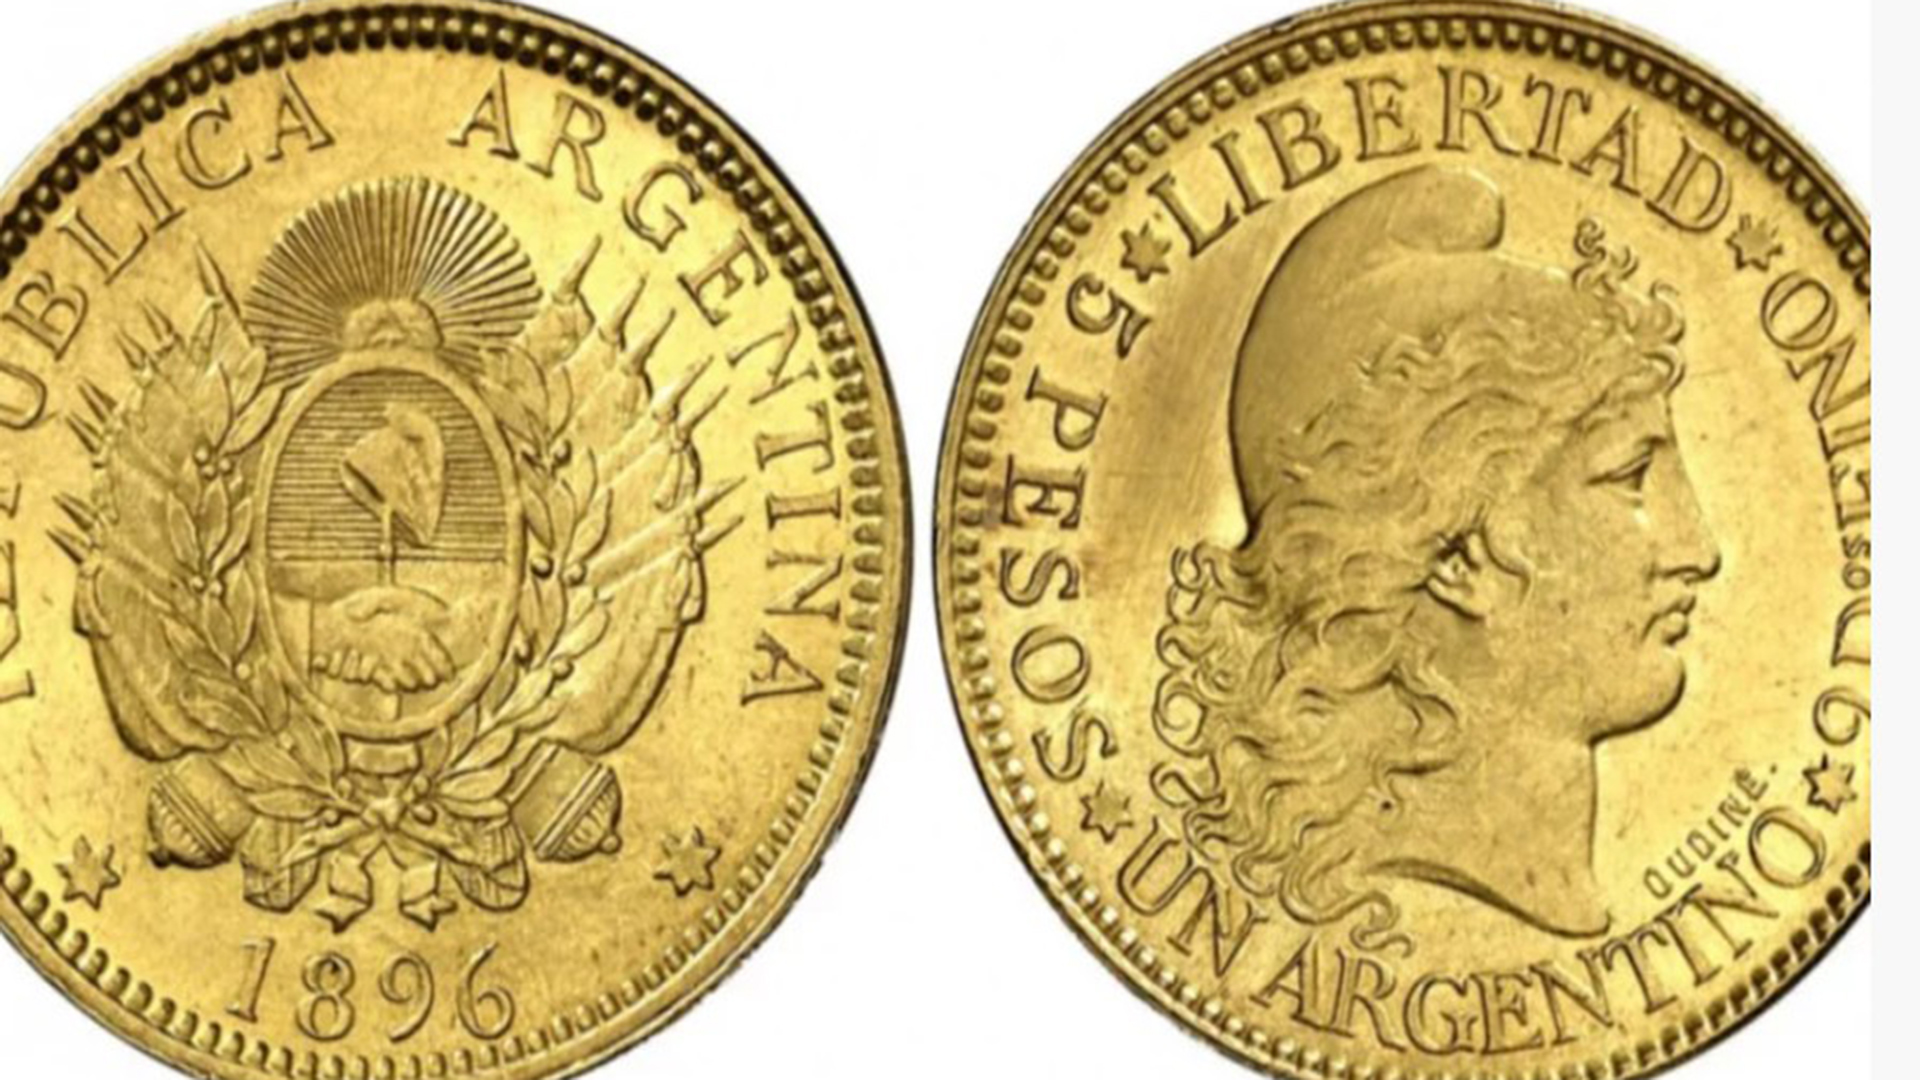 peso oro argentino